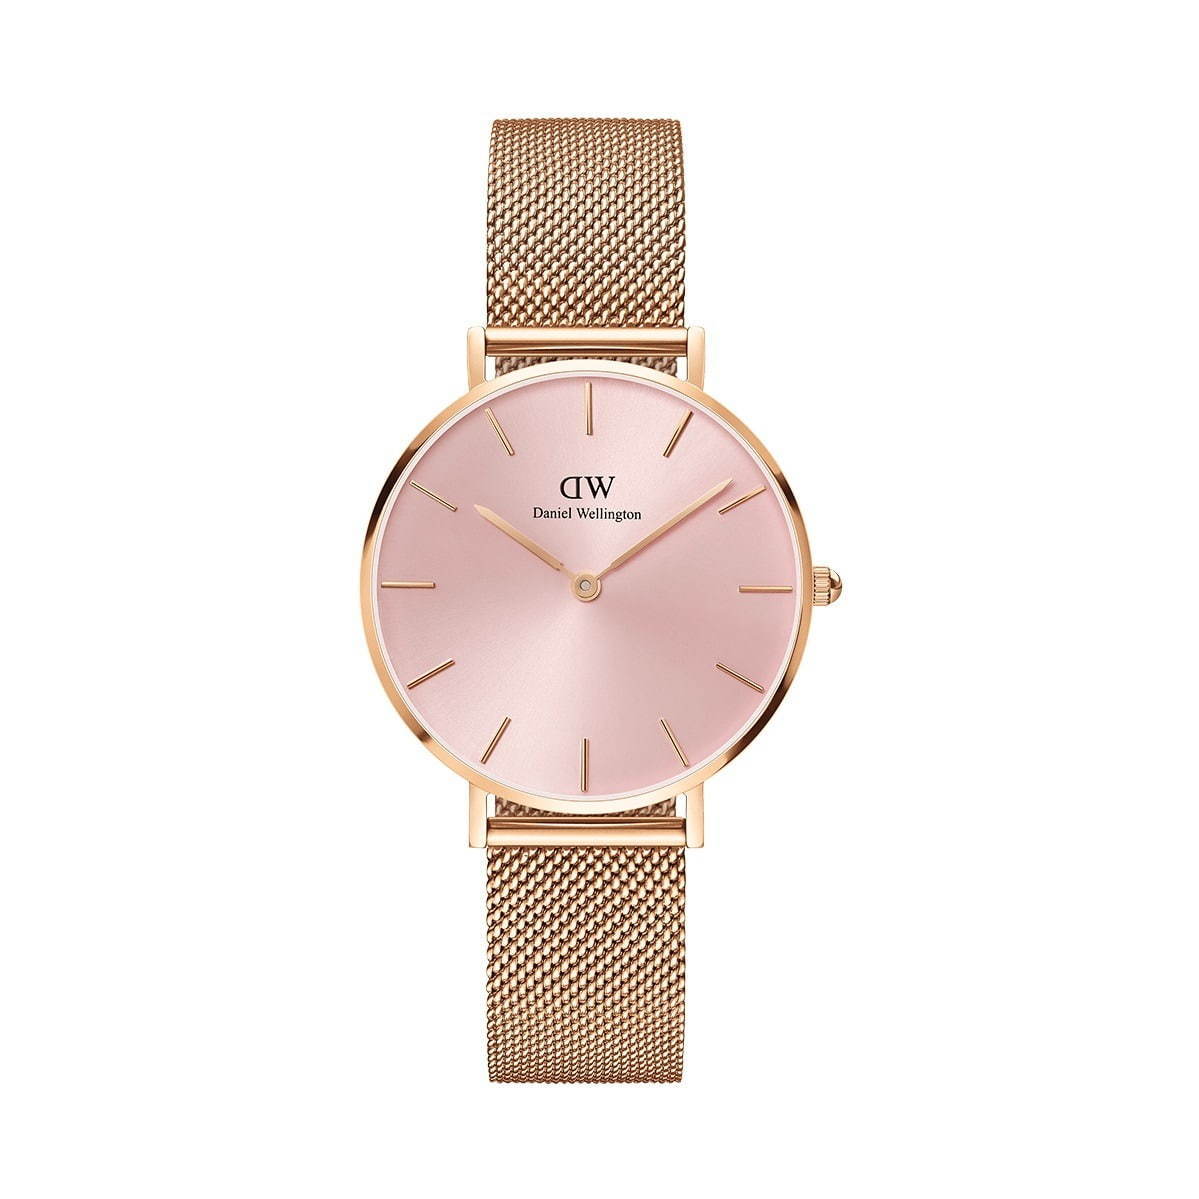 ダニエル・ウェリントン、人気腕時計に“ライトピンク”の新色